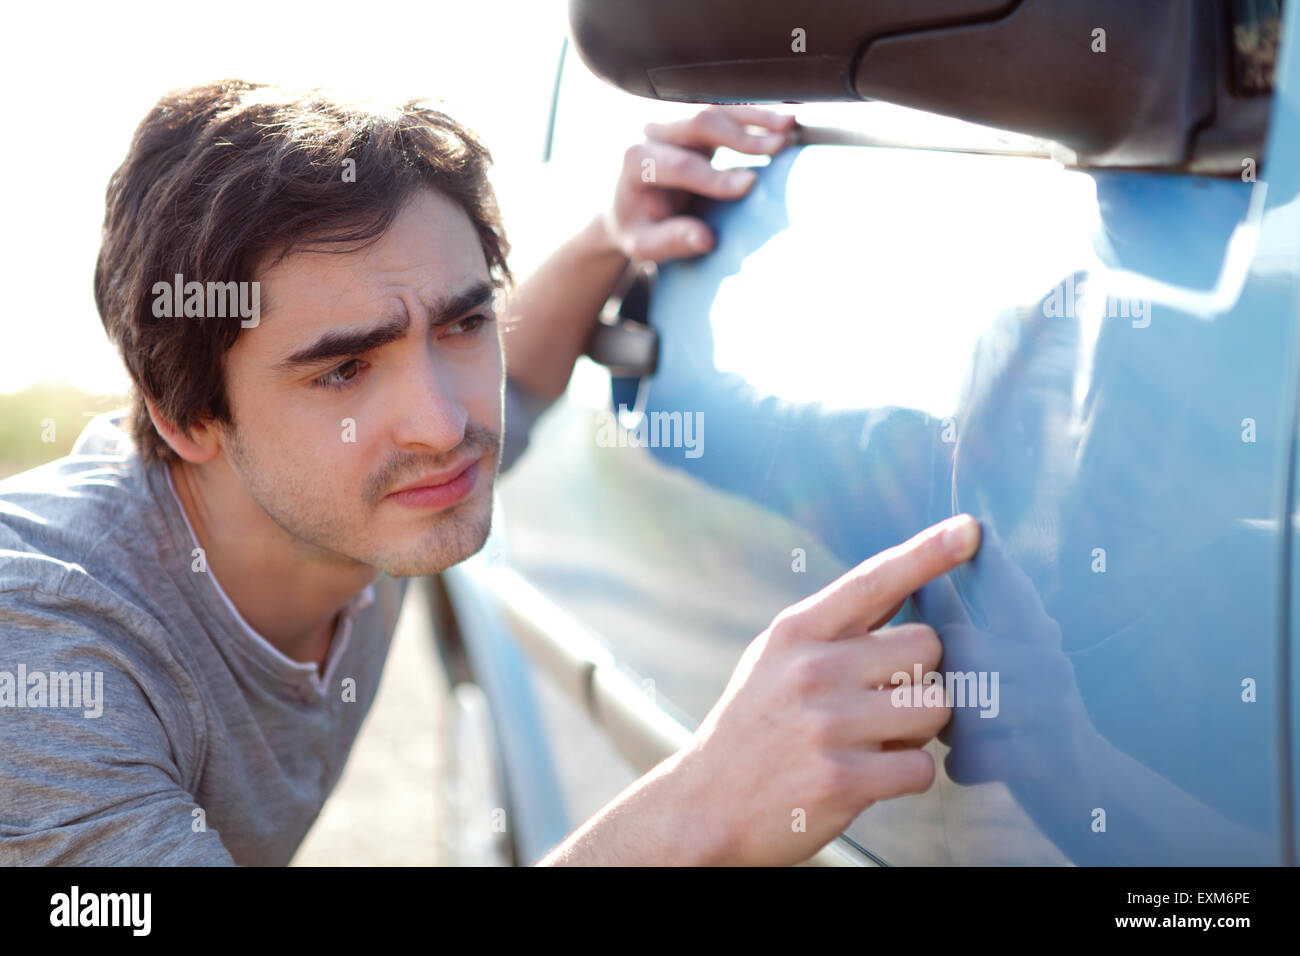 Vue d'un jeune homme à rayures sur sa voiture Banque D'Images